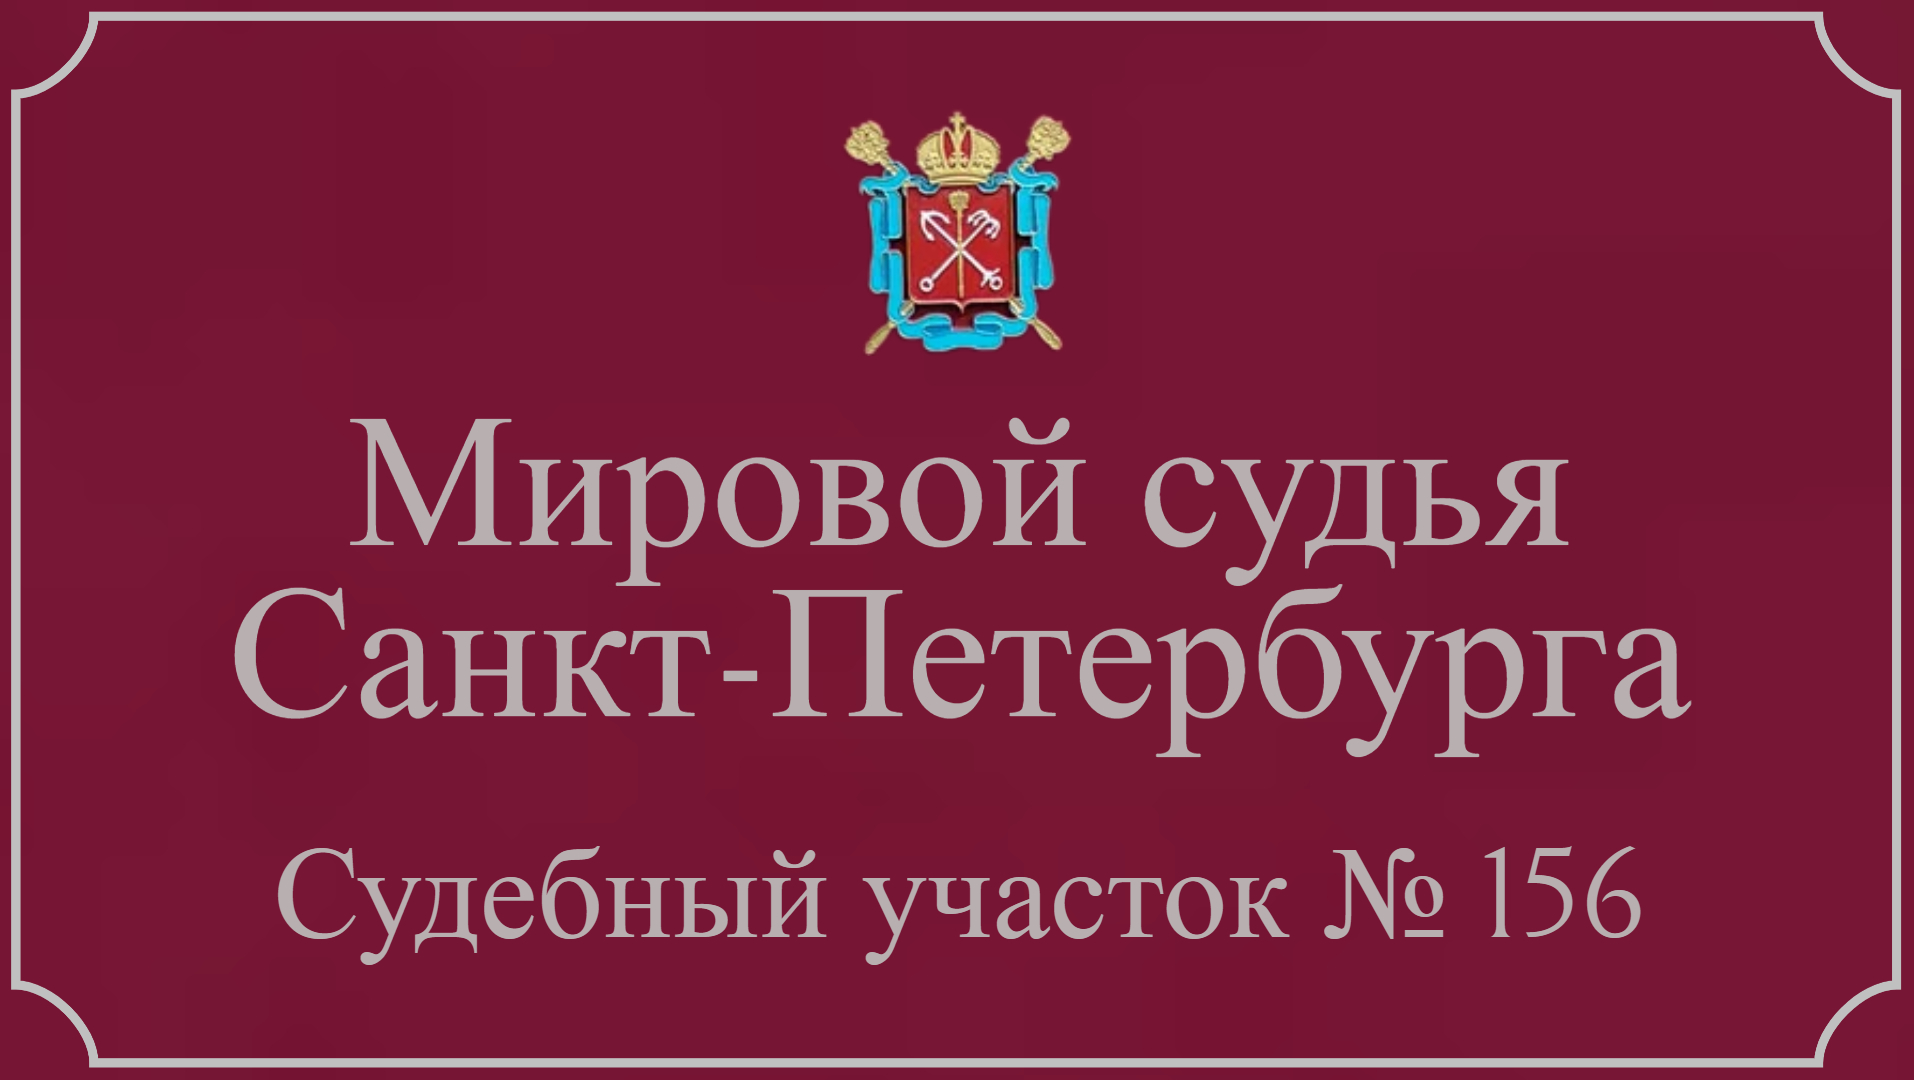 Информация по 156 судебному участку в Санкт-Петербурге.